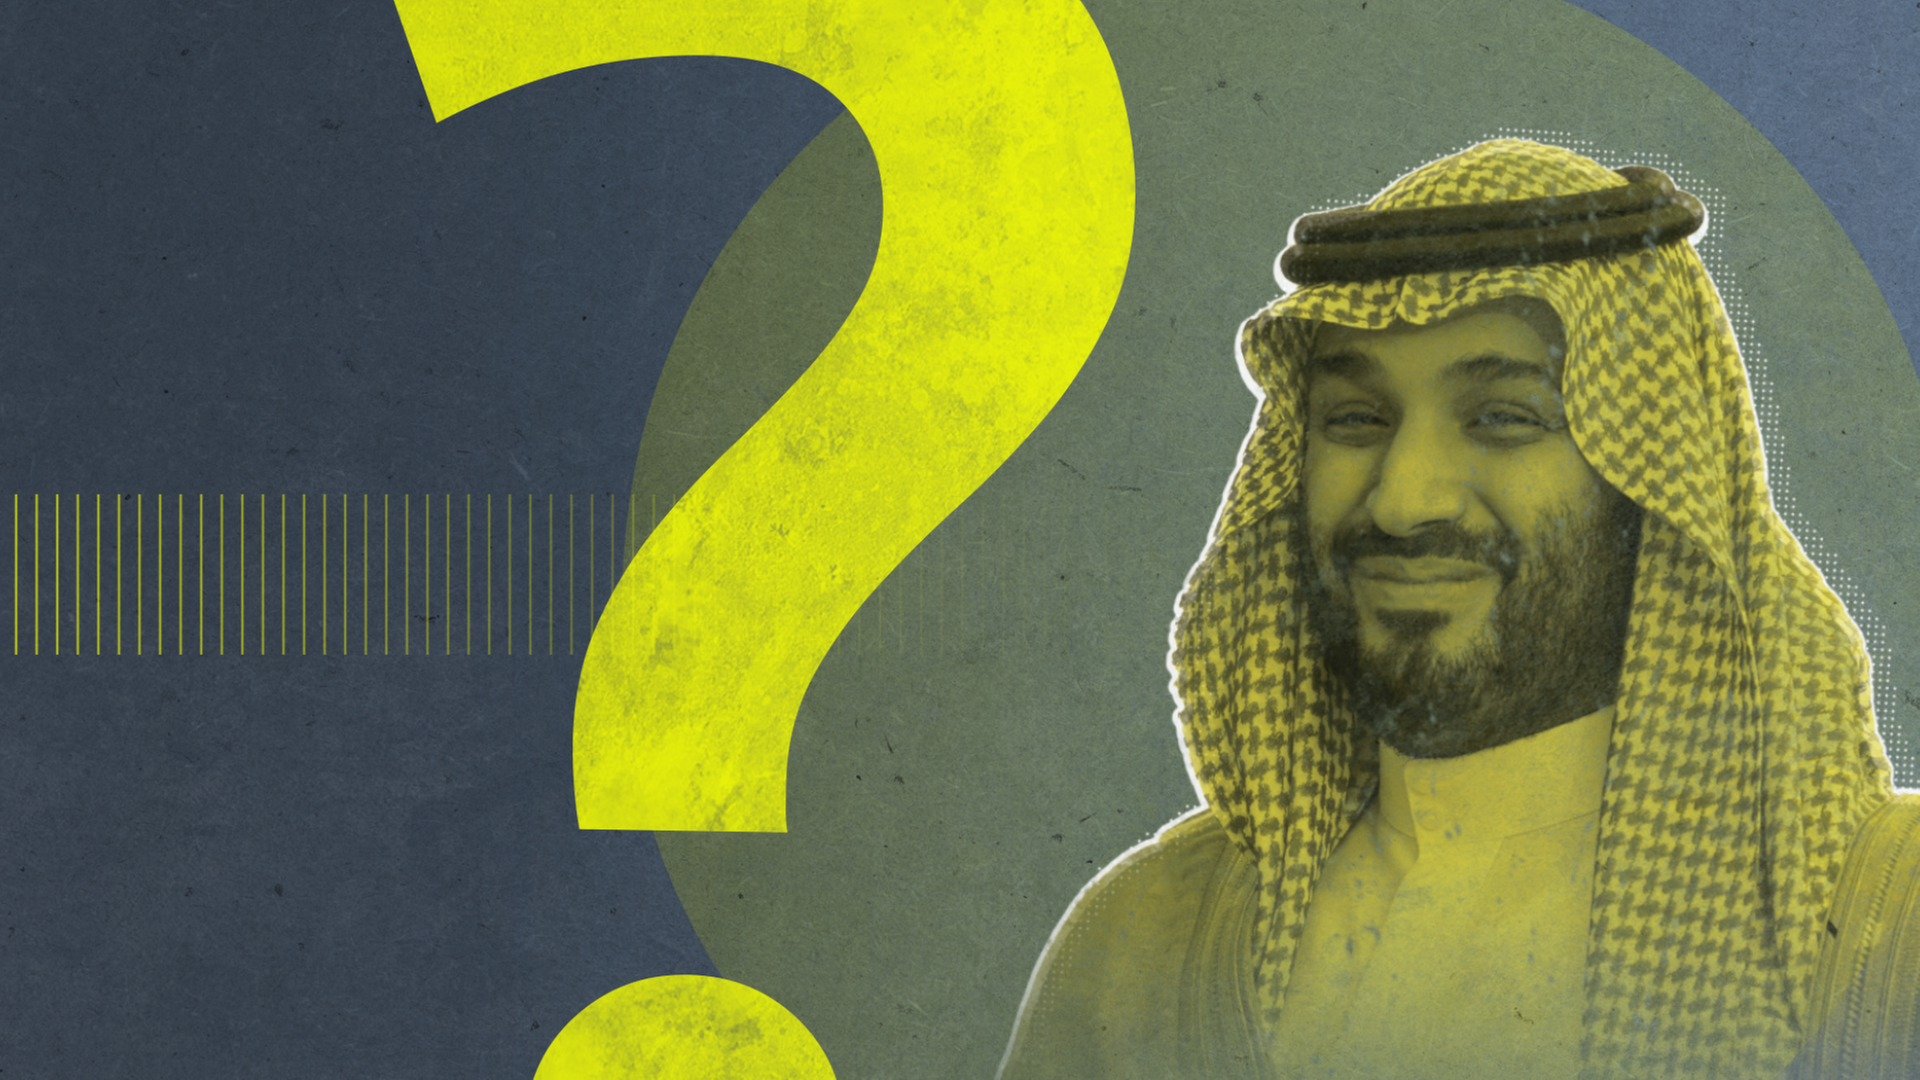 Mohammed bin Salman im Halbprofil, rechtsHalber ist neben einem großen Fragezeichen zu sehen. Das Foto ist gelb-grün eingefärbt.